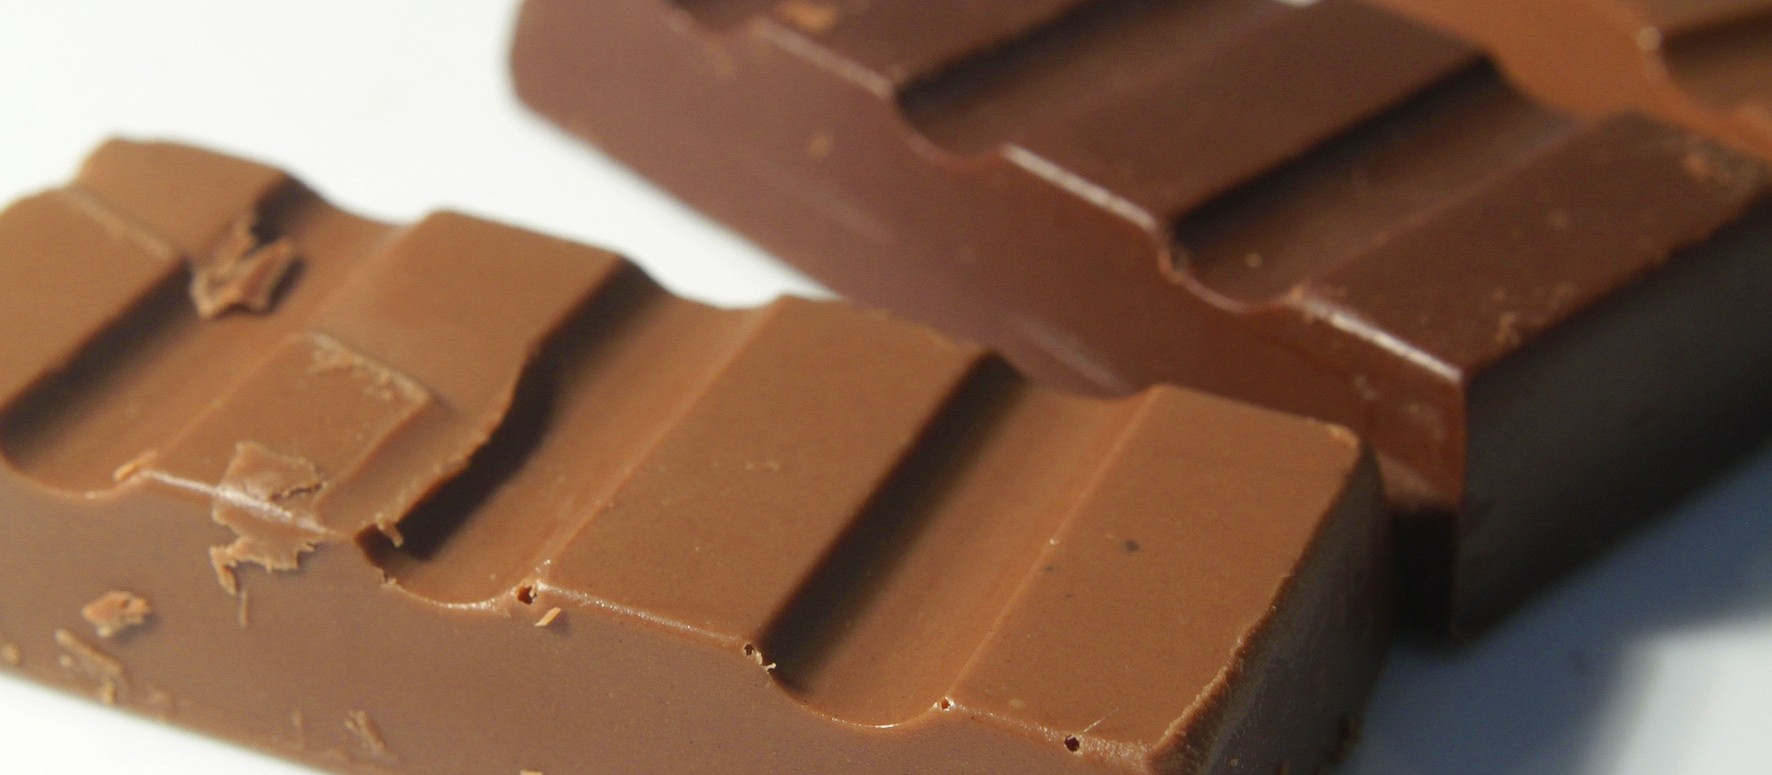 Homem é preso após furtar quase R$ 300 em barras de chocolate